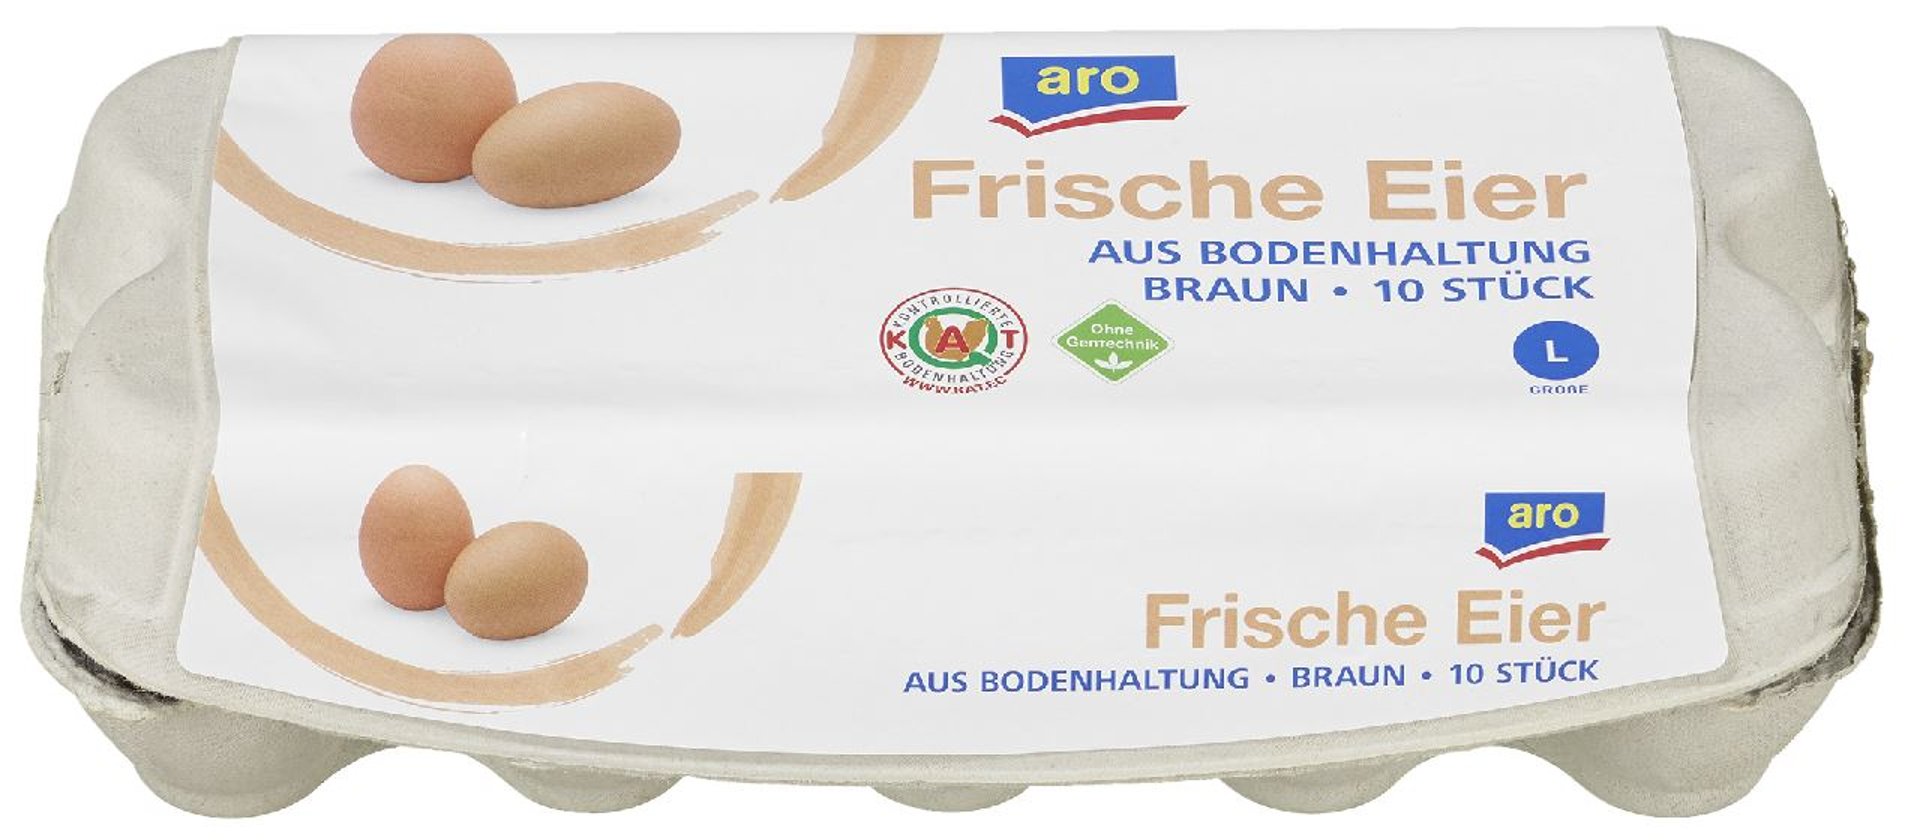 aro - Eier 10er Gr. L Braun Bodenhaltung - 10 Stück